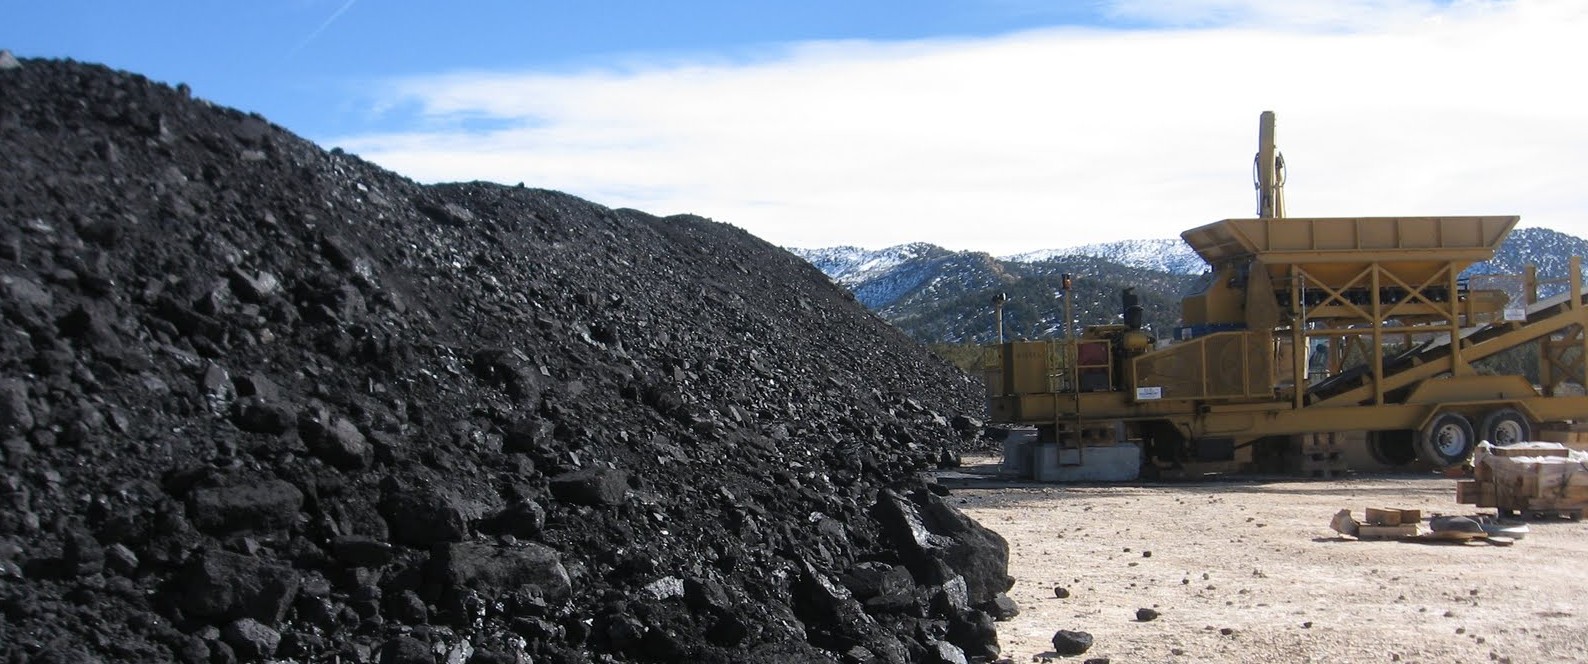 coal demand